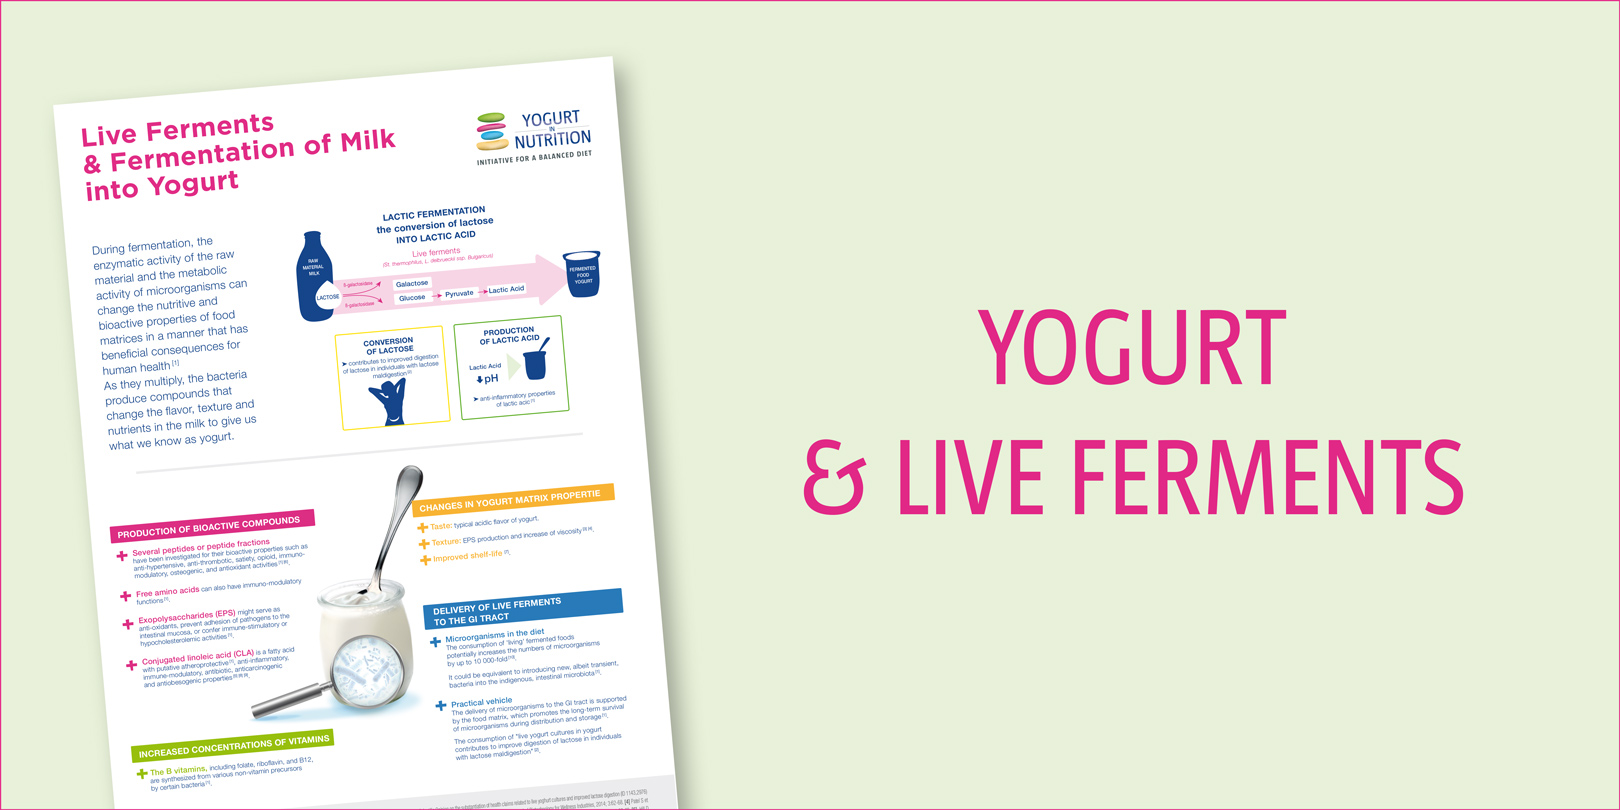 Live ferments & fermentation of milk into yogurt - Yogurt Live Ferments